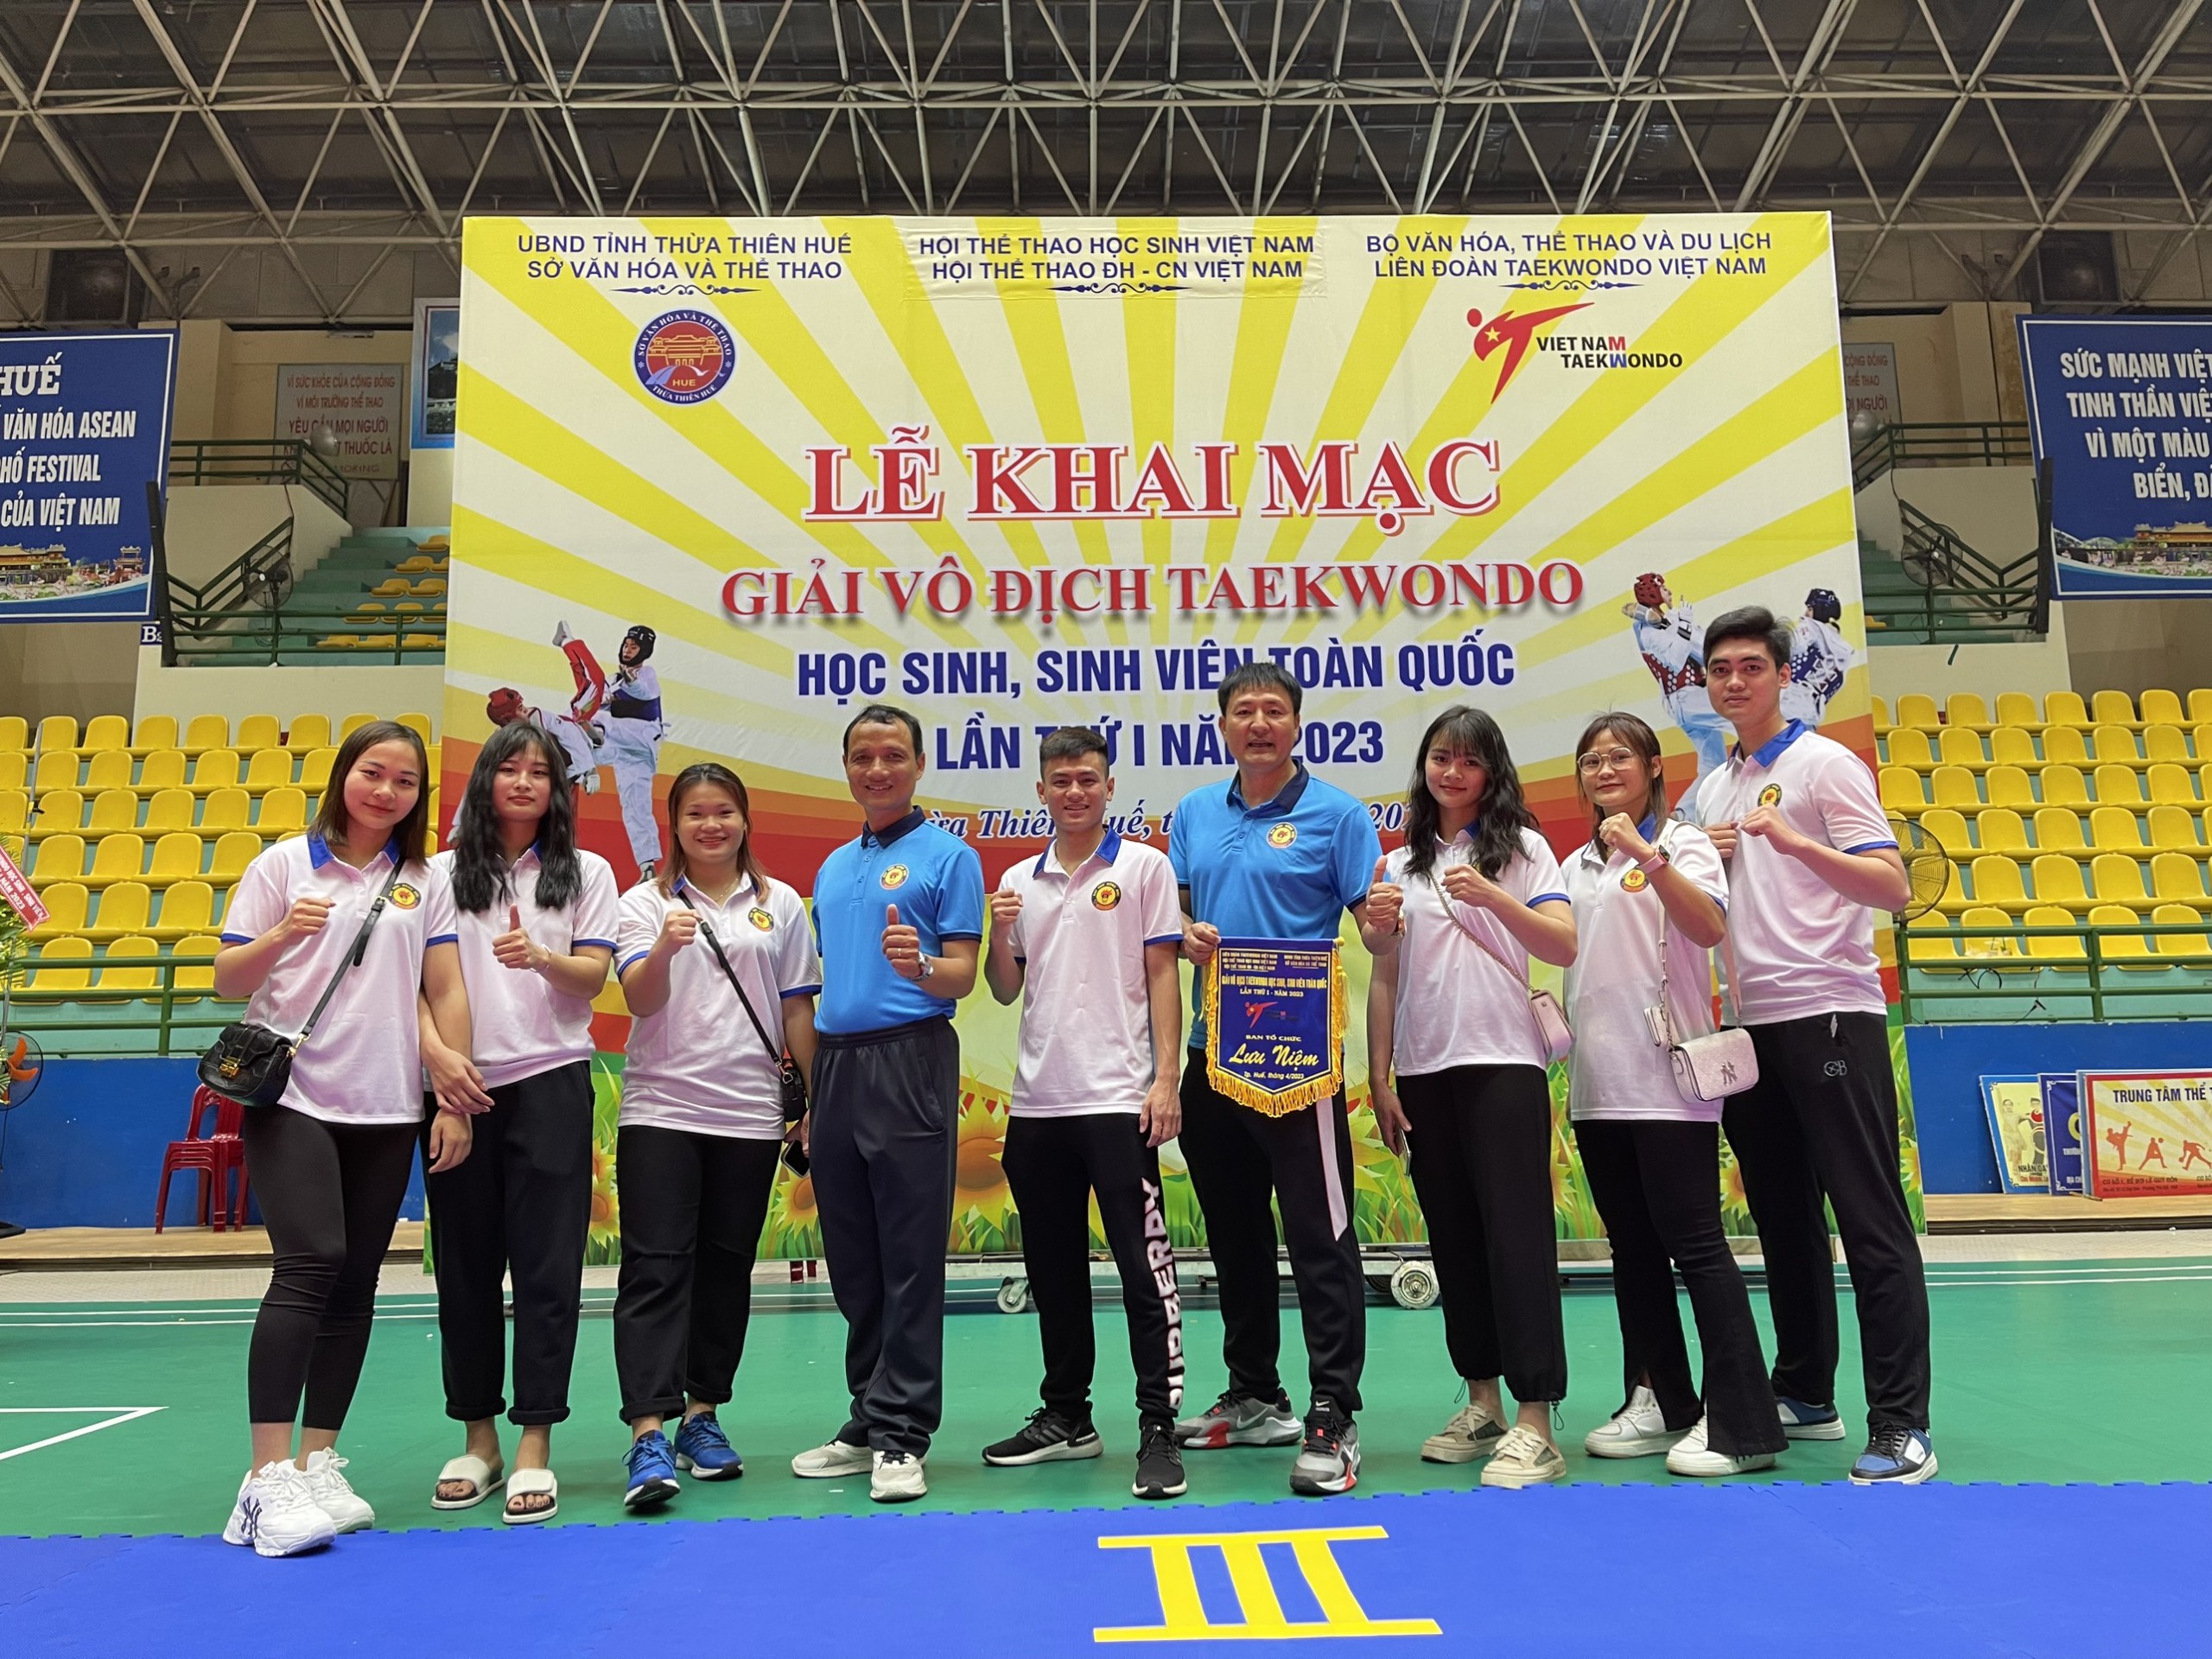 Đoàn VĐV Sinh viên trường Đại học Hồng Đức tham gia Giải Vô địch Taekwondo học sinh, sinh viên toàn quốc lần thứ I - năm 2023.